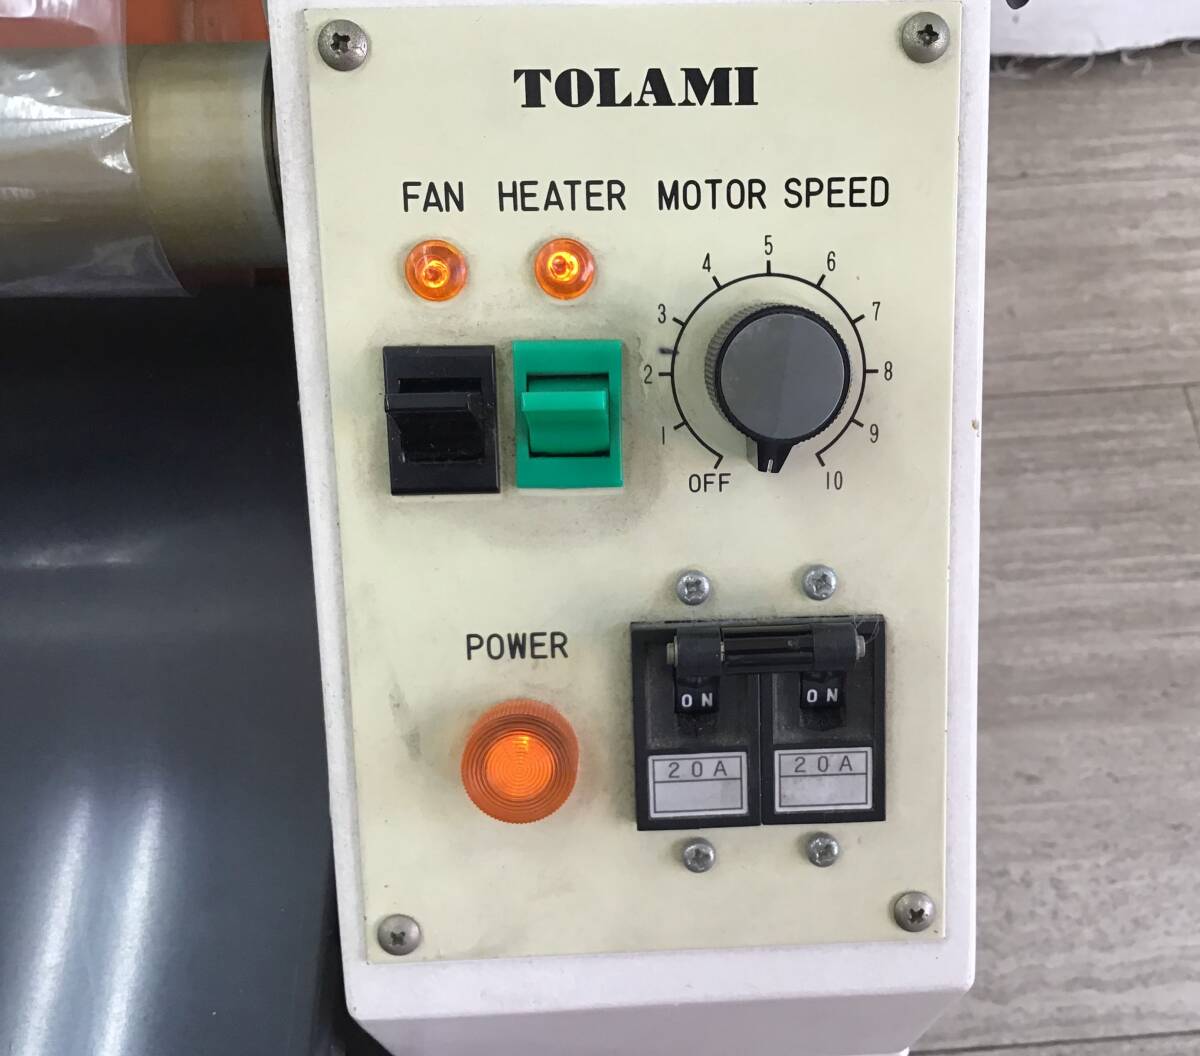 [ самовывоз ограничение / Ishikawa префектура Komatsu город ] электризация OK TOLAMI для бизнеса ламинатор DX-350 Tokyo lami шея s товары для магазина офисная работа товар 